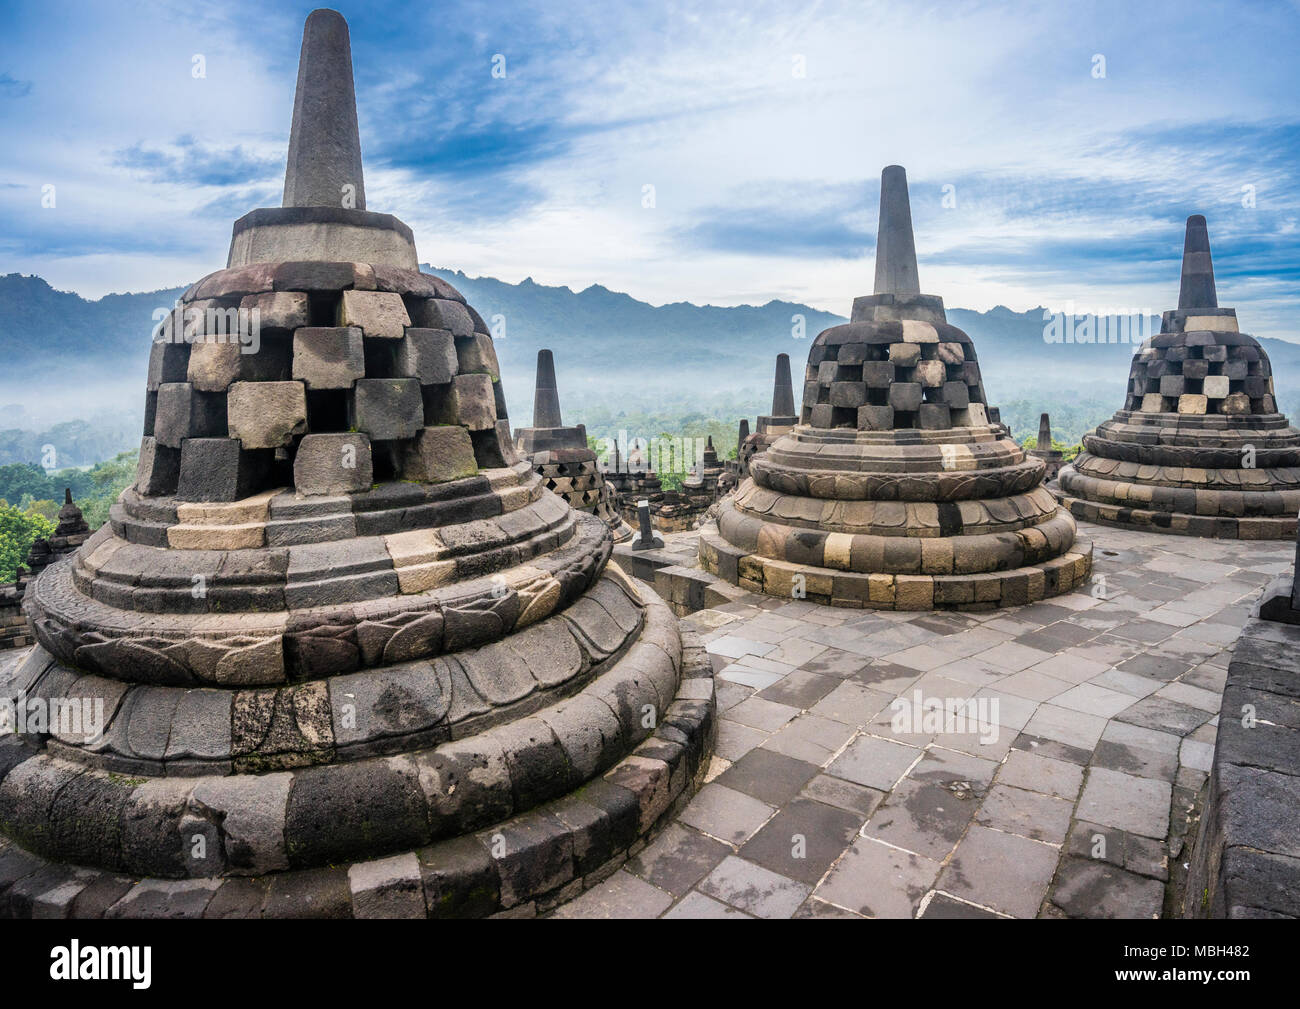 Las estupas perforadas que contienen estatuas de Buda en el top terrazas circulares del siglo ix templo Budista Borobudur, en Java Central, Indonesia Foto de stock